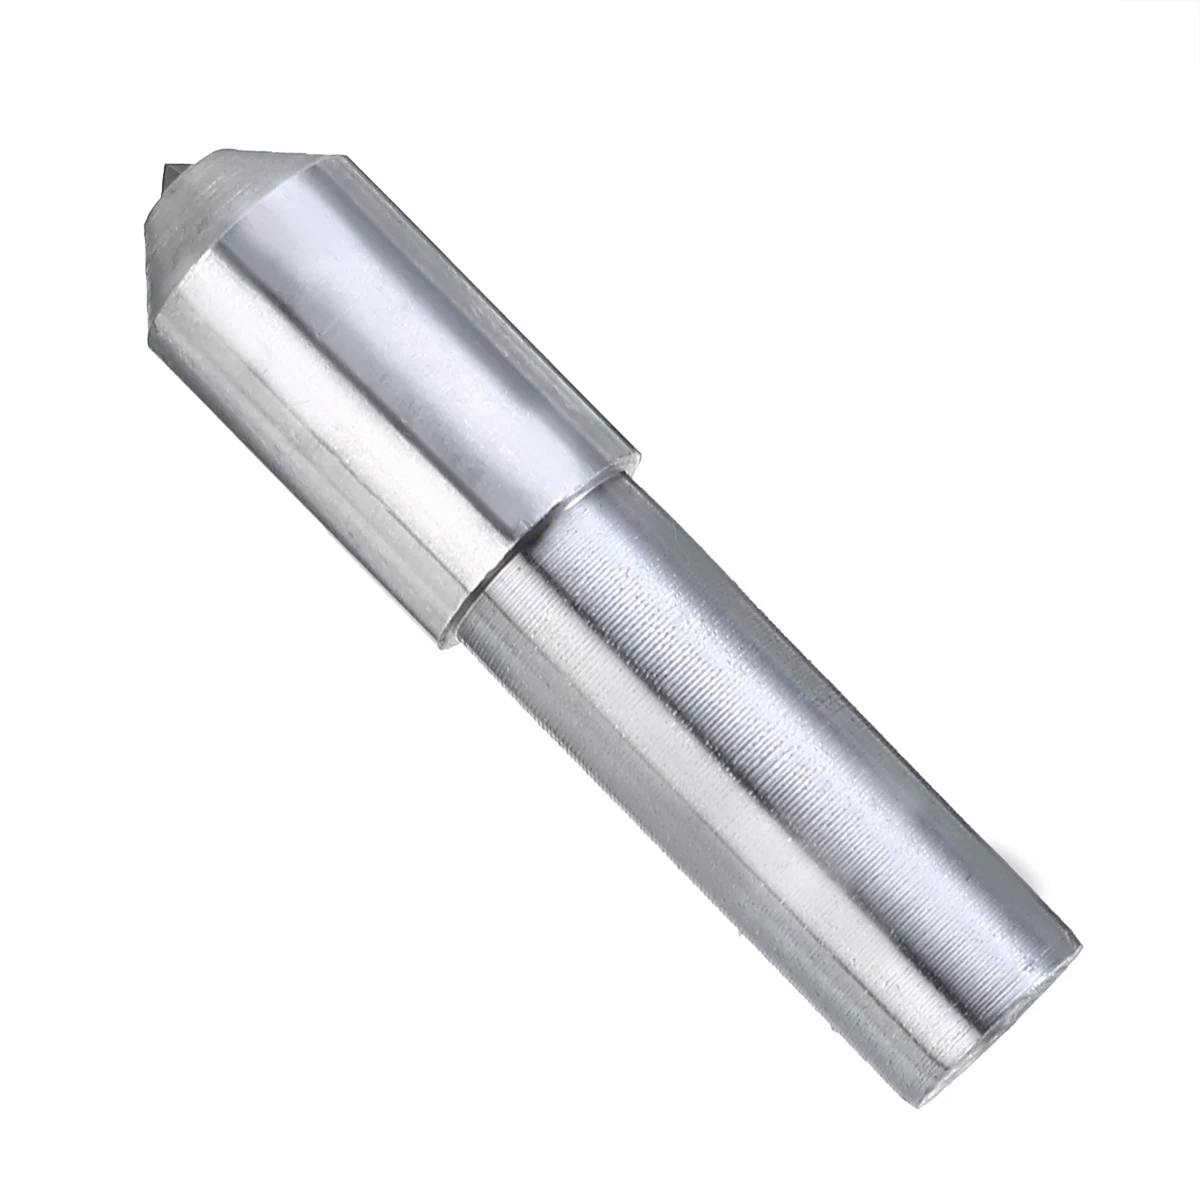 1 шт. 4 мм диаметр Алмазное Колесо комод шлифовальный туалетный карандаш Mayitr для электроинструмента